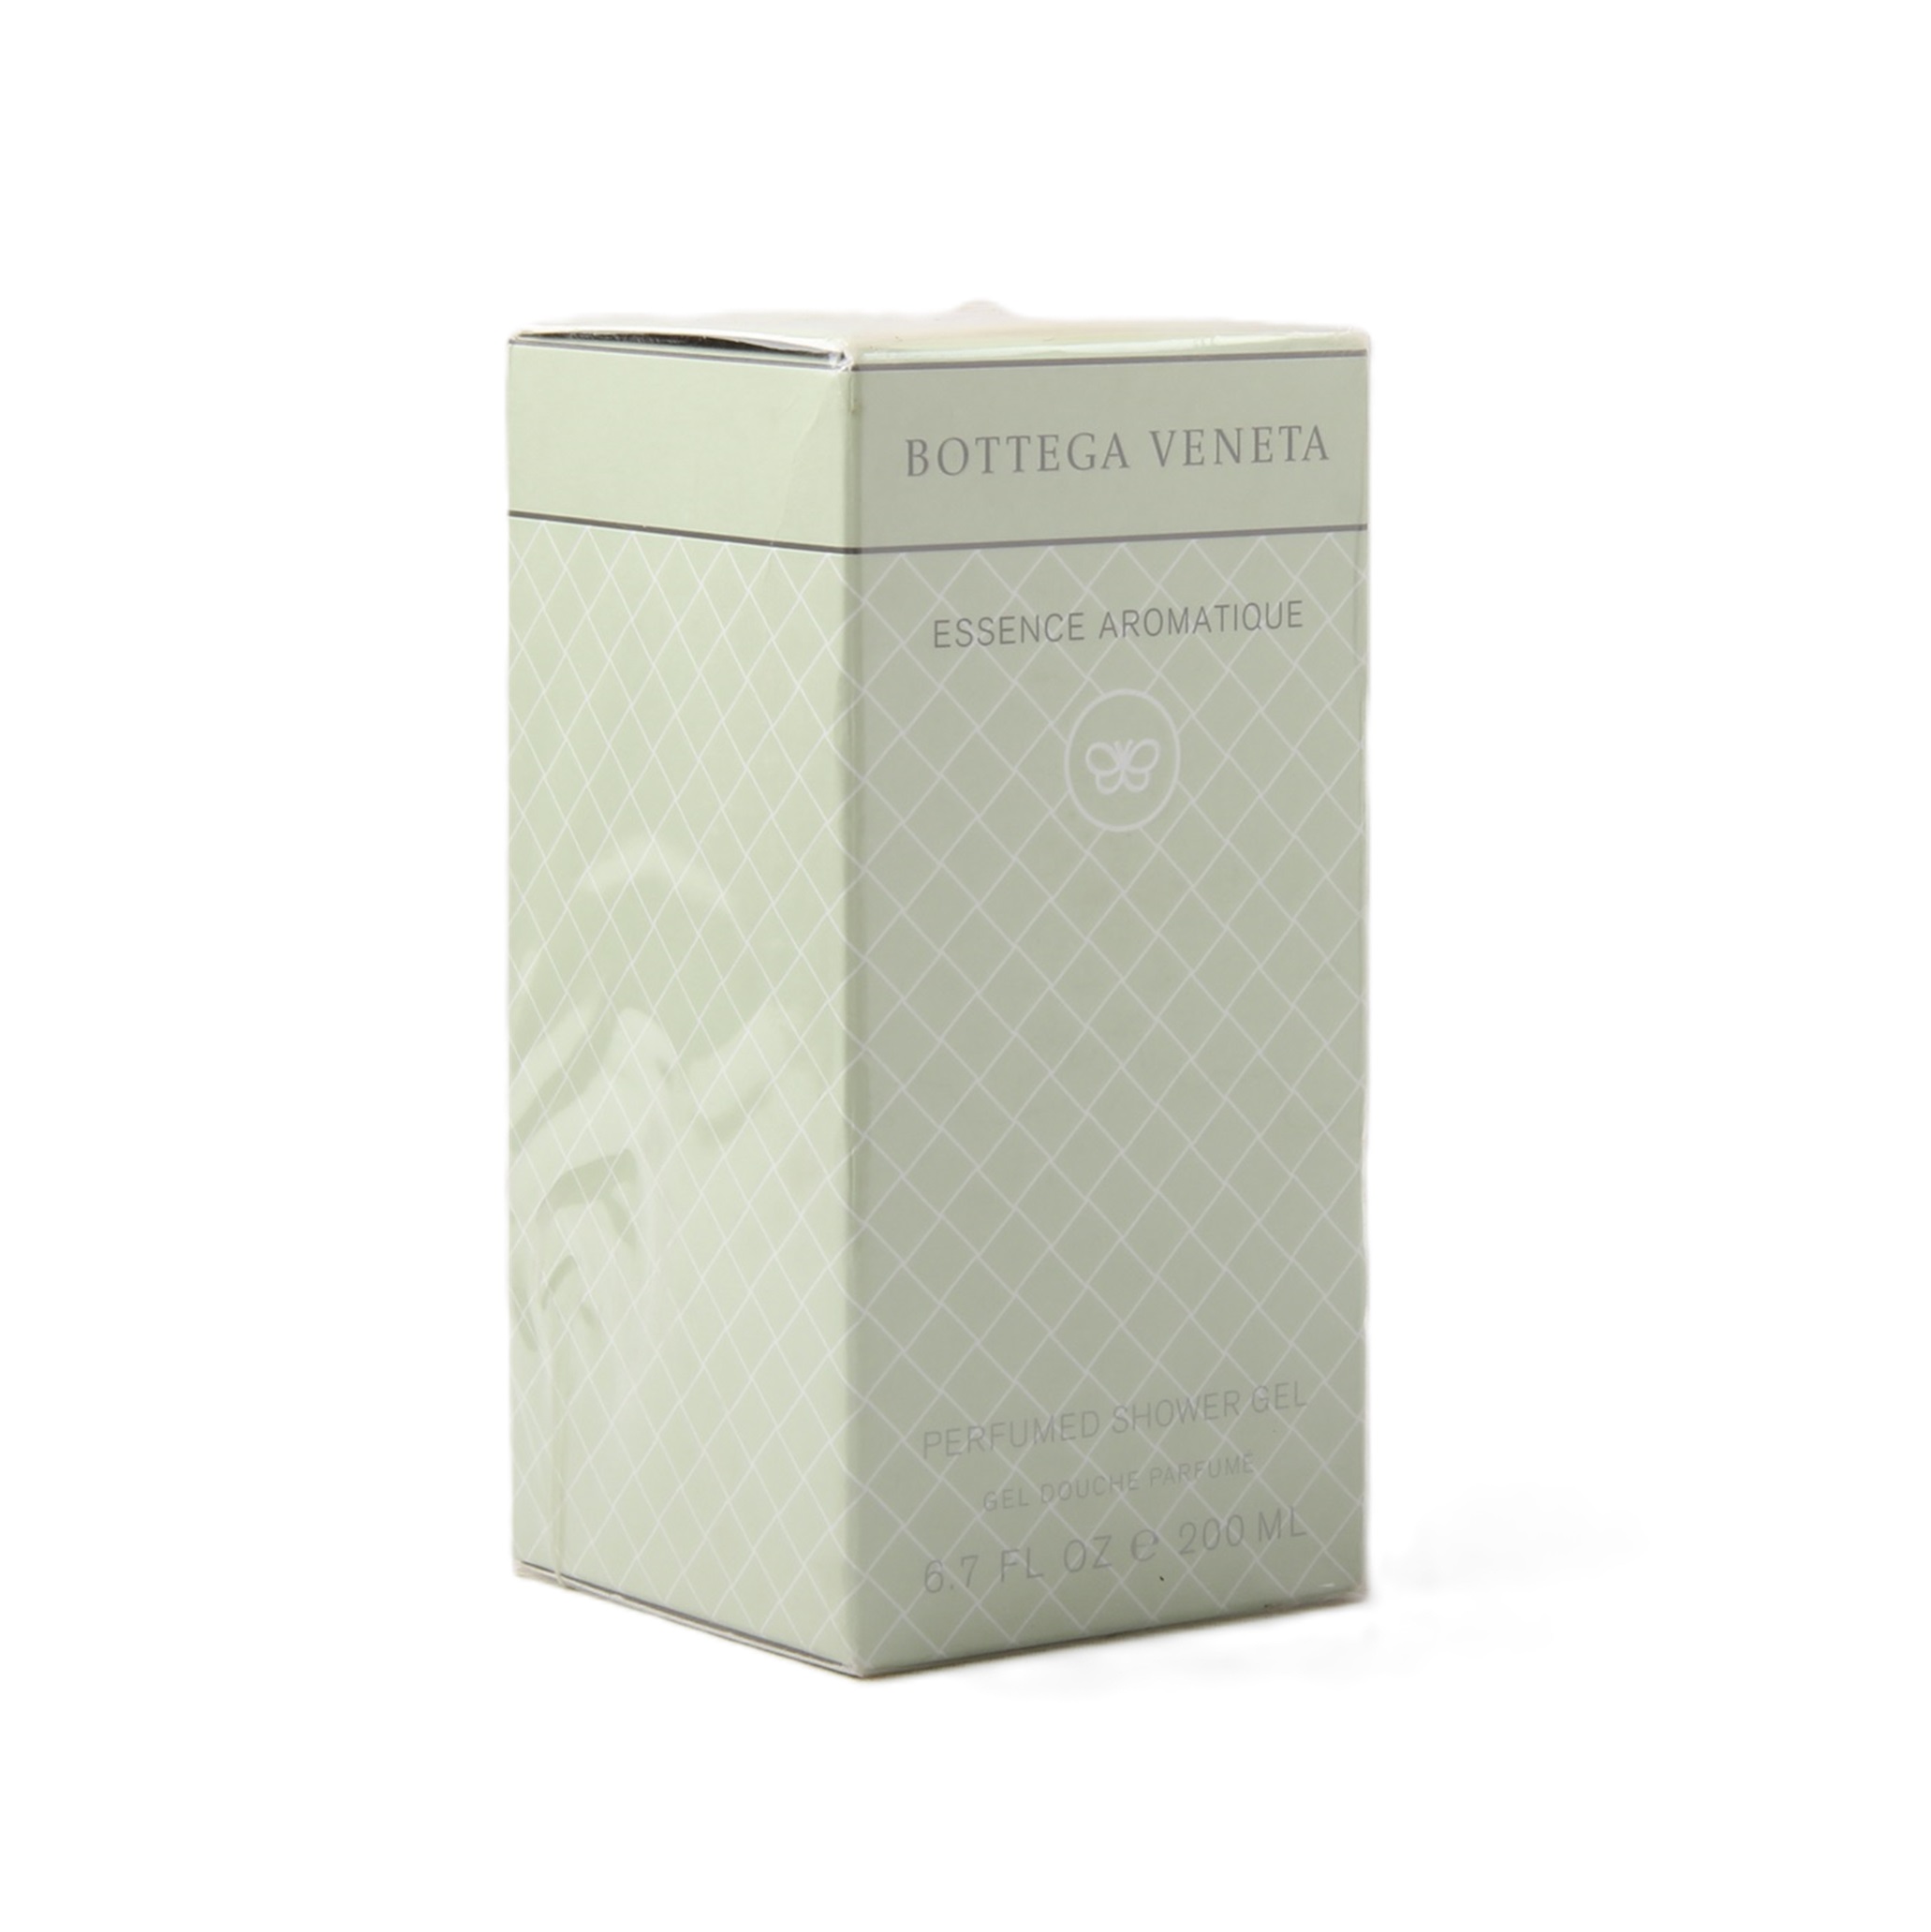 Bottega Veneta Essence Aromatique Perfumed Shower Gel 200 ml